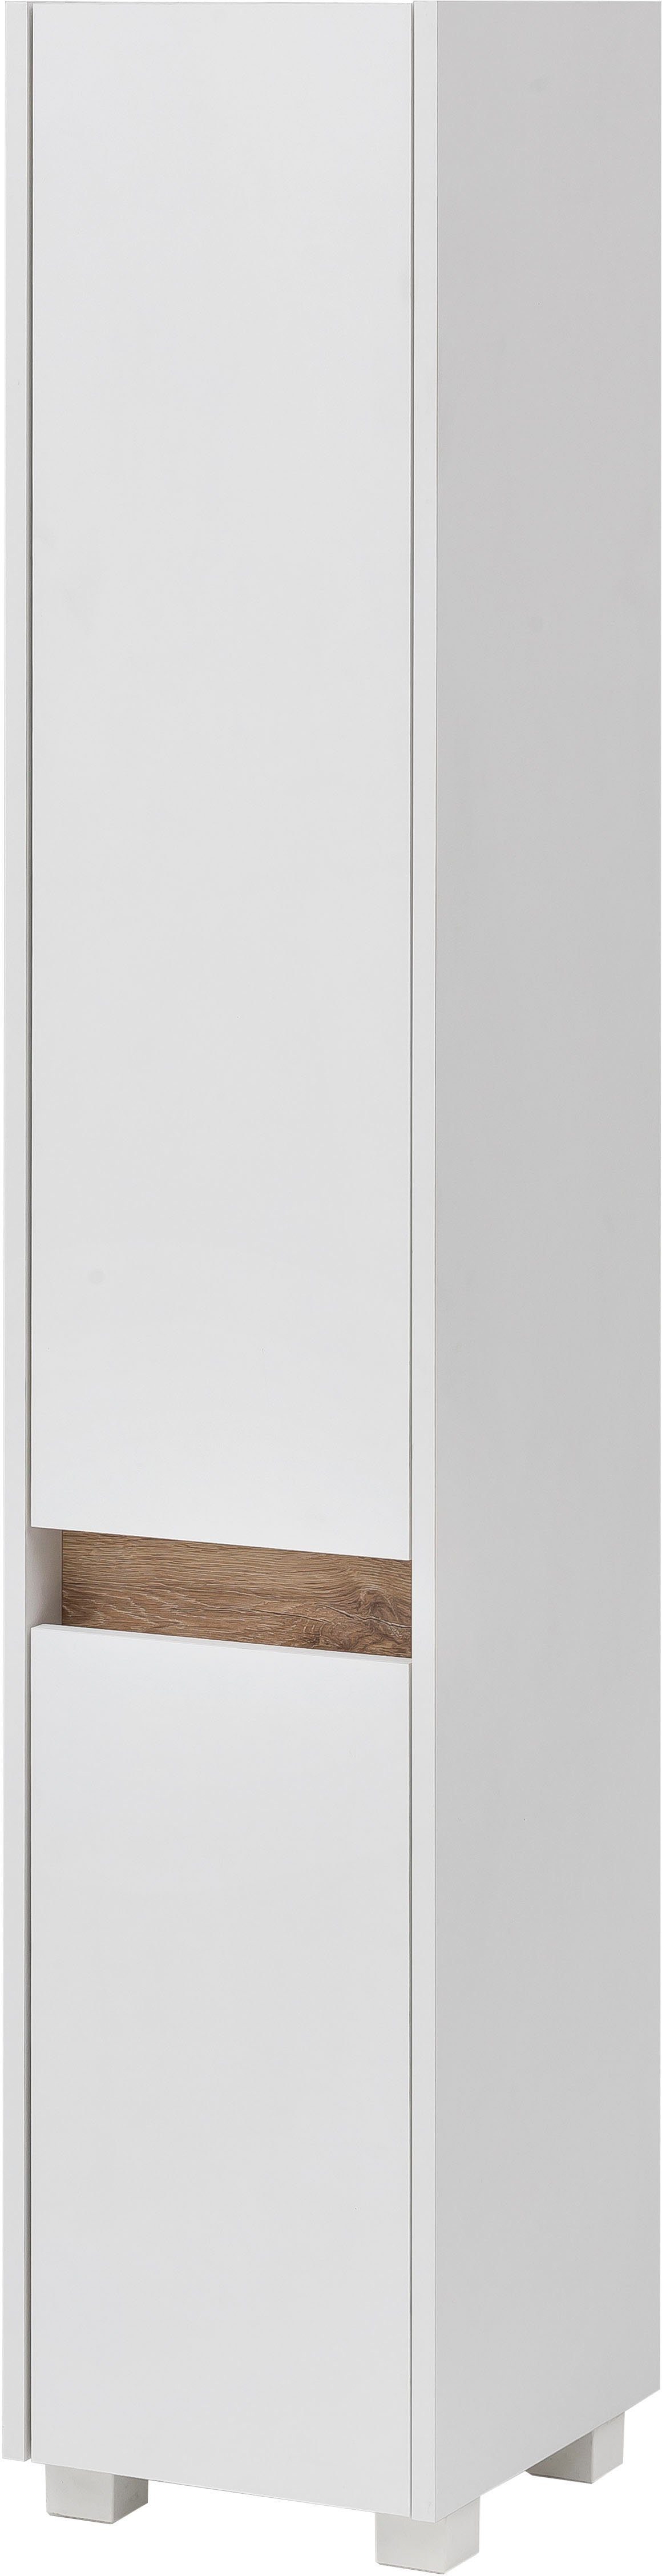 Schildmeyer Hochschrank »Cosmo« Höhe 164,5 cm, Badezimmerschrank mit  griffloser Optik, Blende im modernen Wildeiche-Look, wechselbarer  Türanschlag online kaufen | OTTO